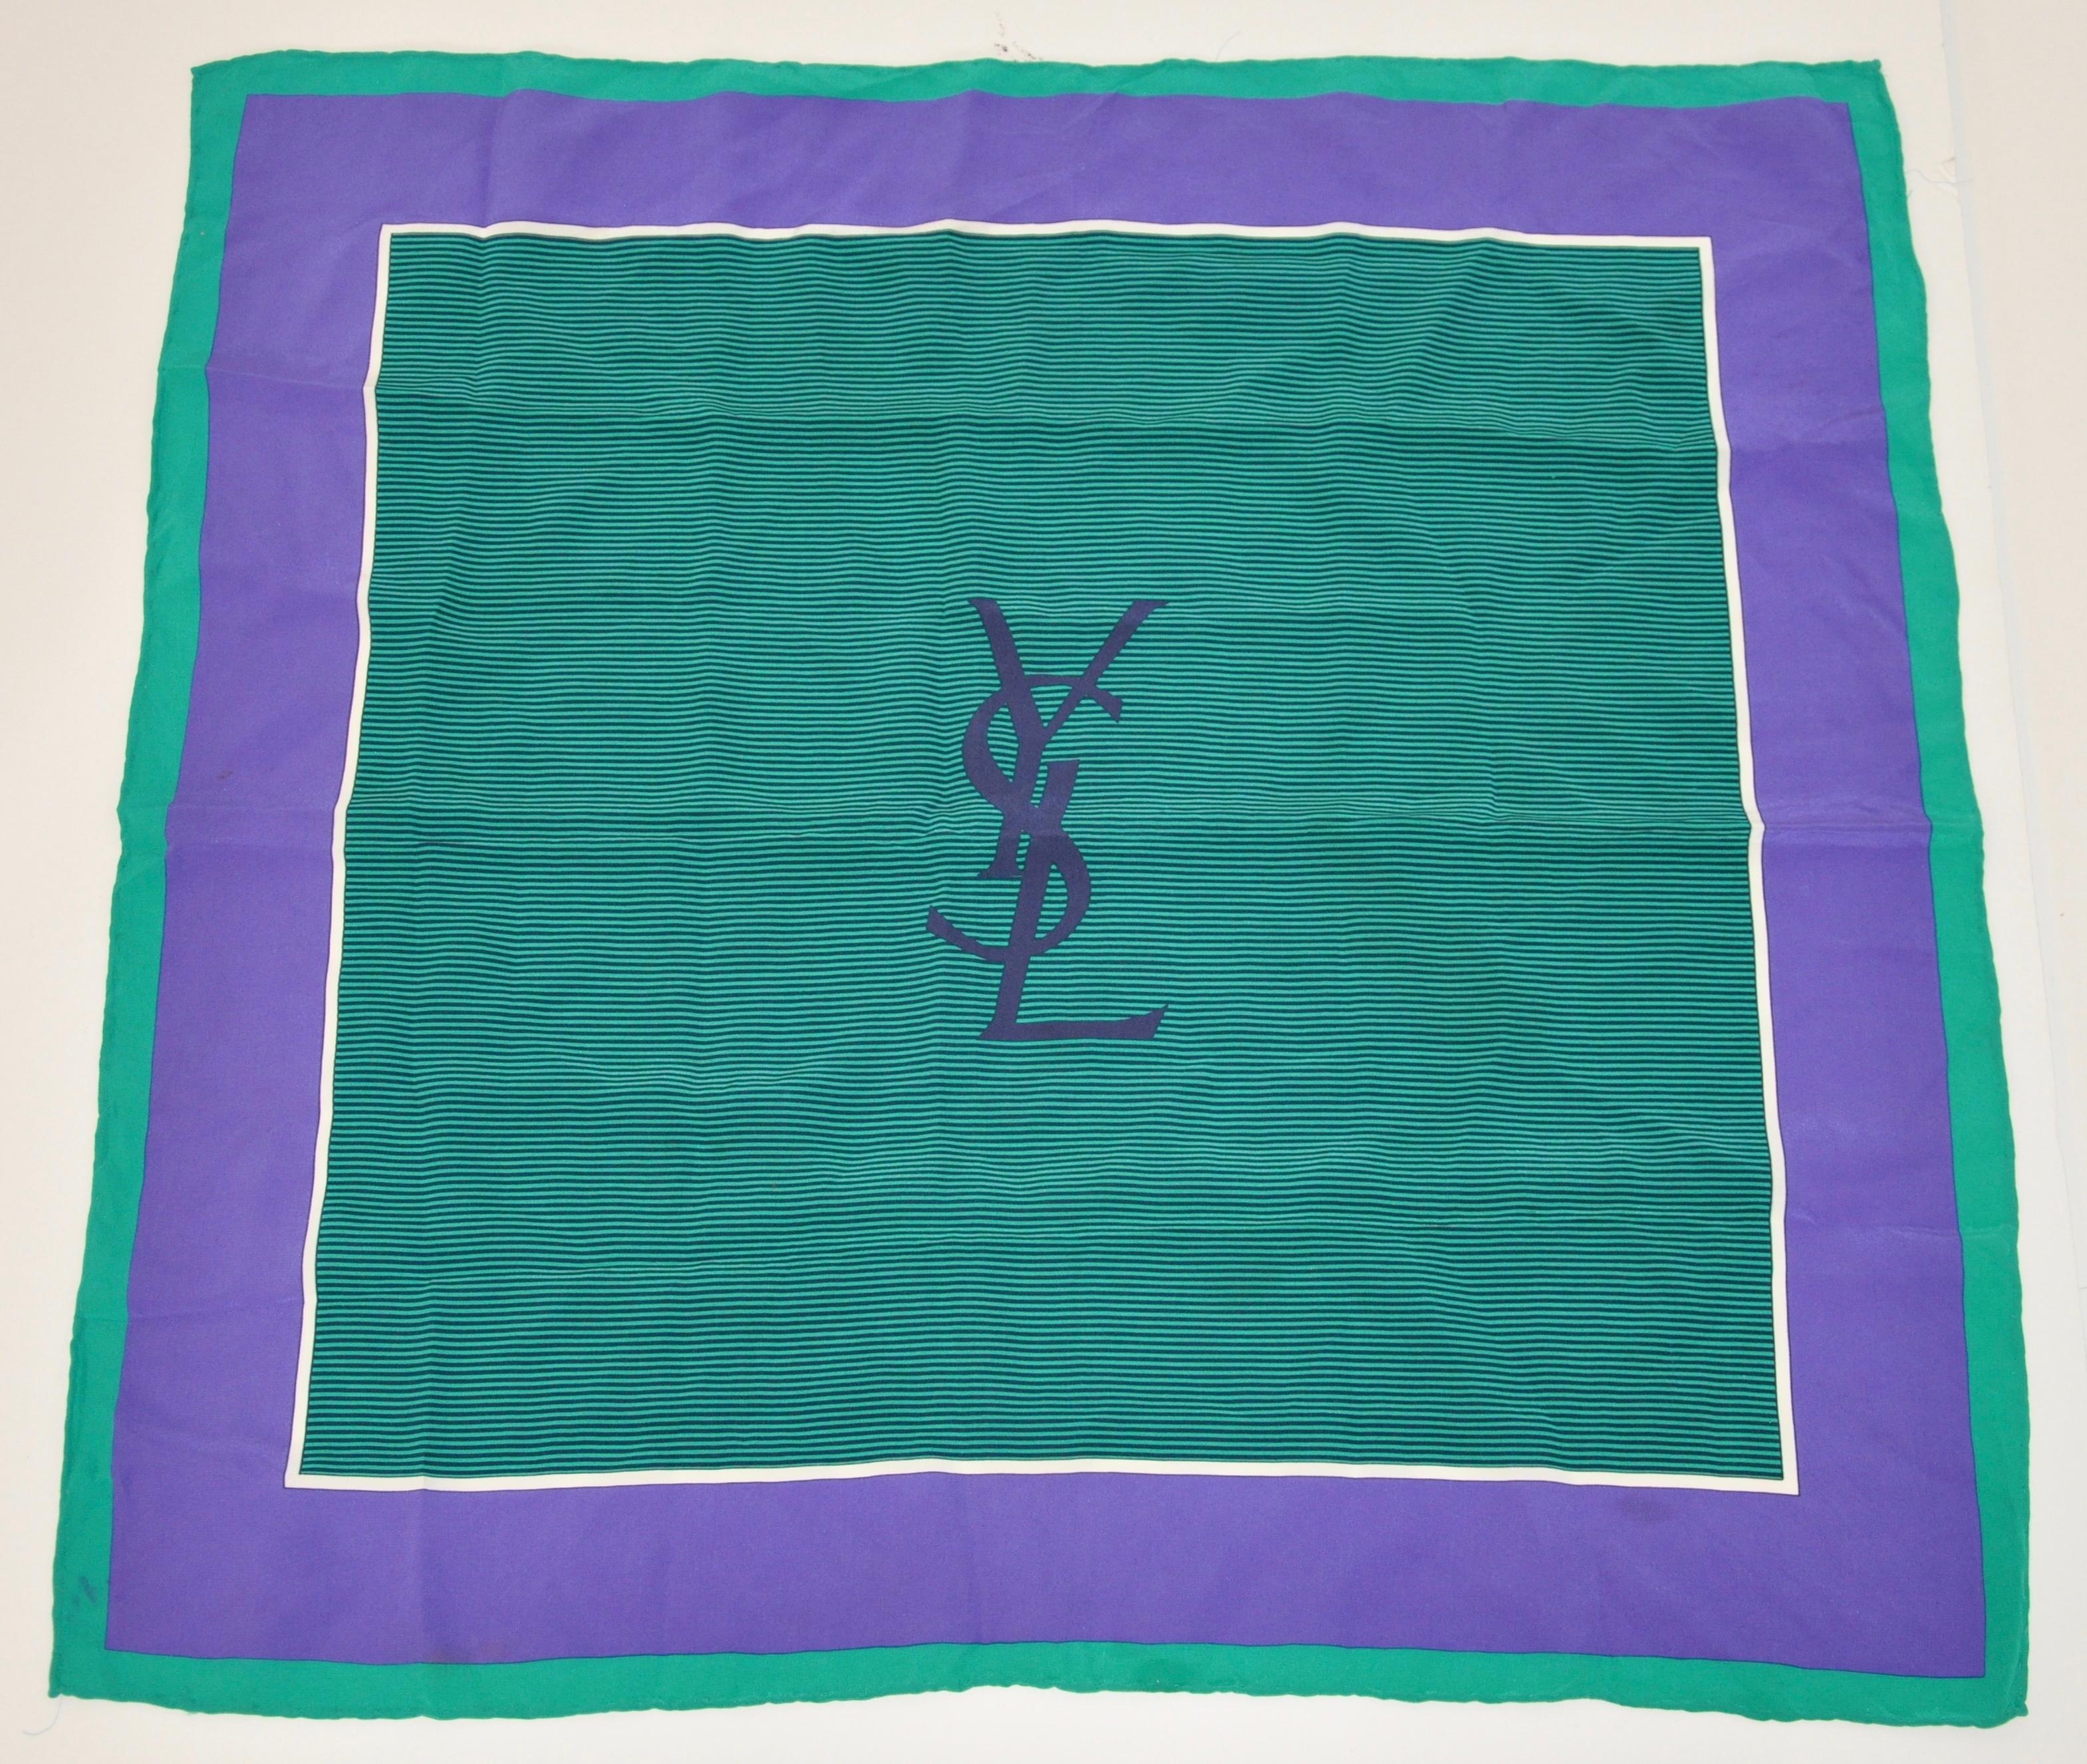        L'écharpe en soie à bordure verte et lavande profonde signée Yves Saint Laurent, avec des bords roulés à la main, mesure 24 pouces sur 25 pouces. Fabriqué en France.